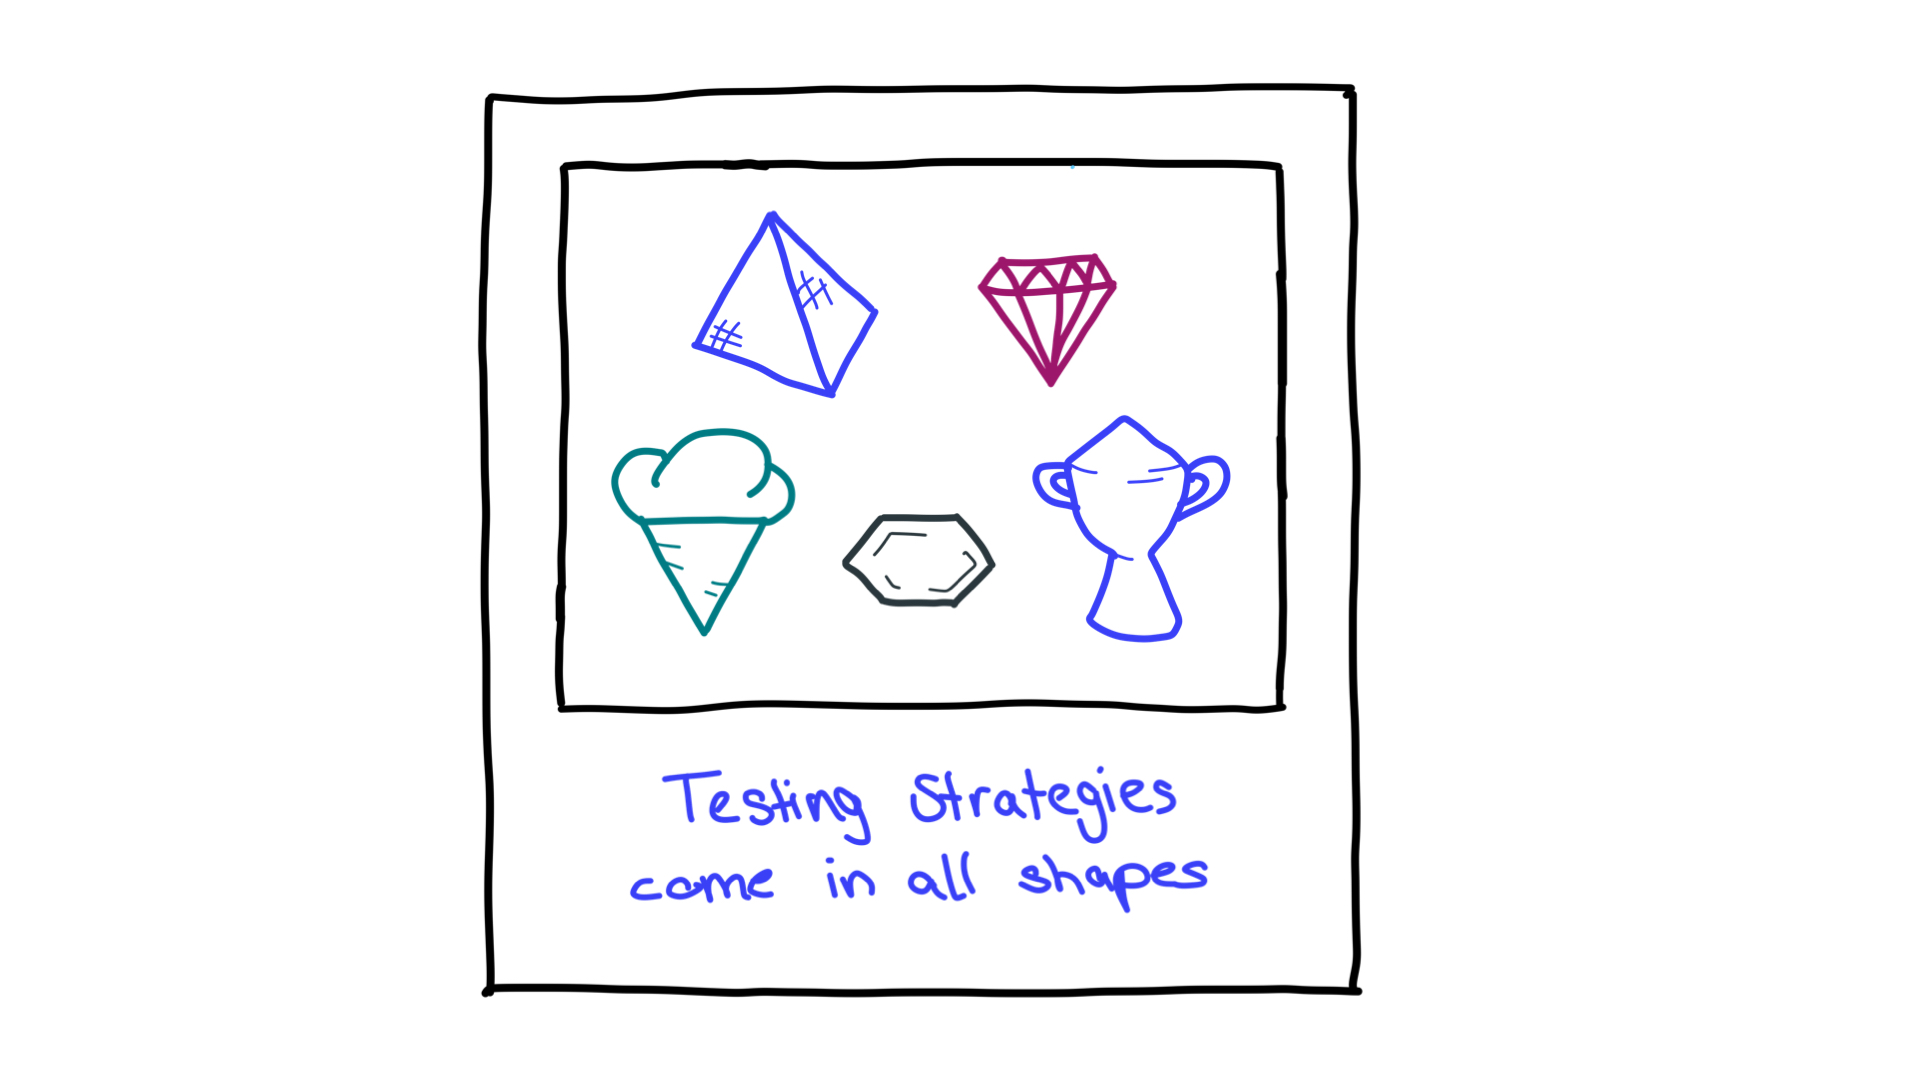 Molte forme come piramide, diamanti, cono di ghiaccio, favi e un trofeo, che rappresentano le strategie di test.